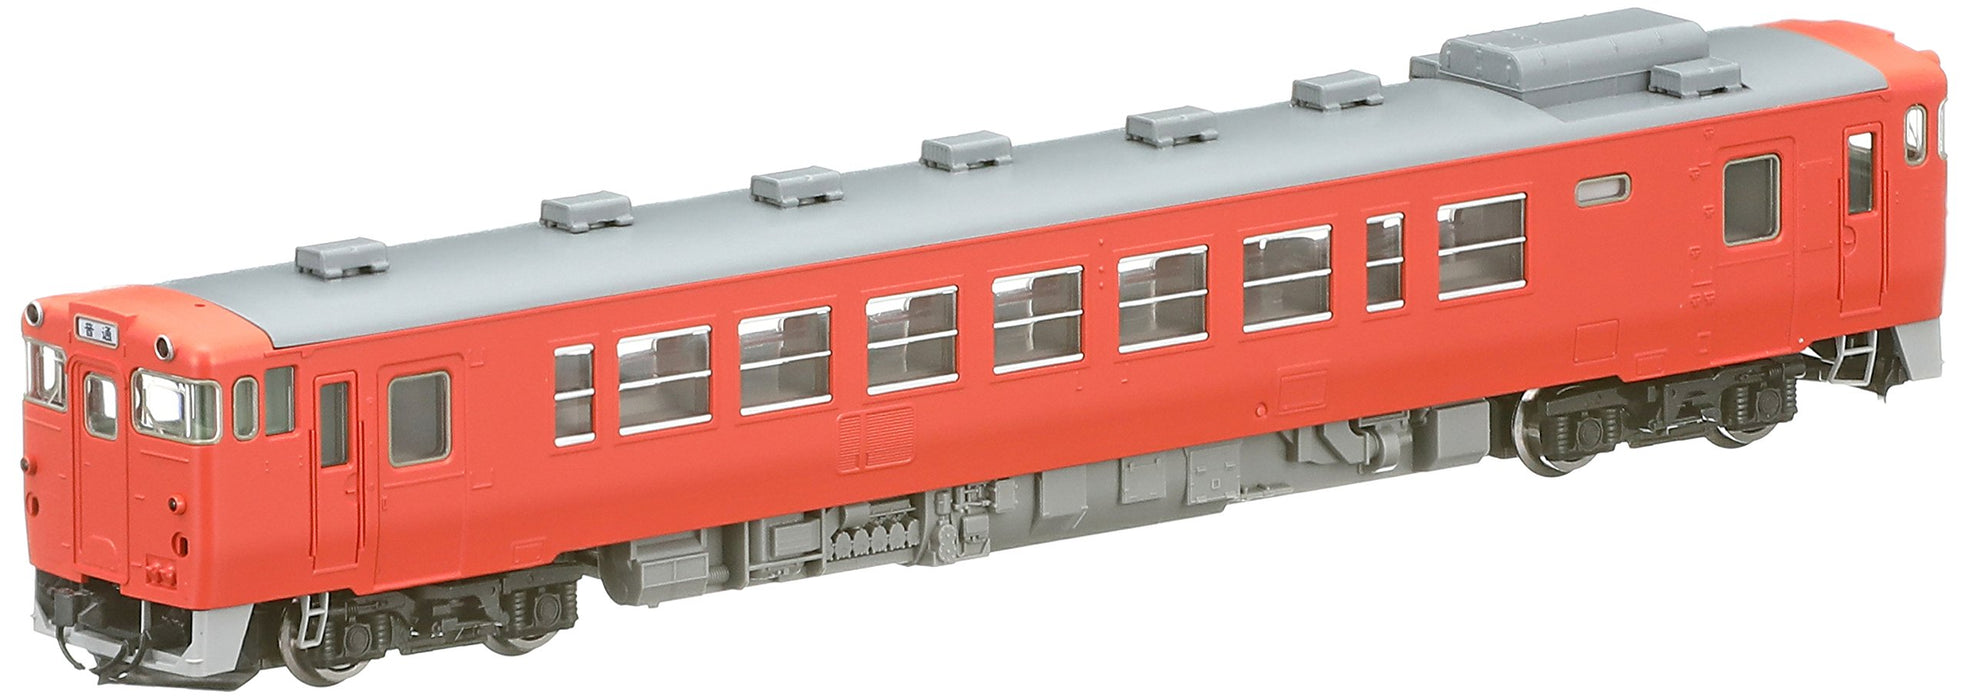 Tomytec Tomix Kiha 40-500 M 8403 Dieselwagen: Spur N Eisenbahnmodell